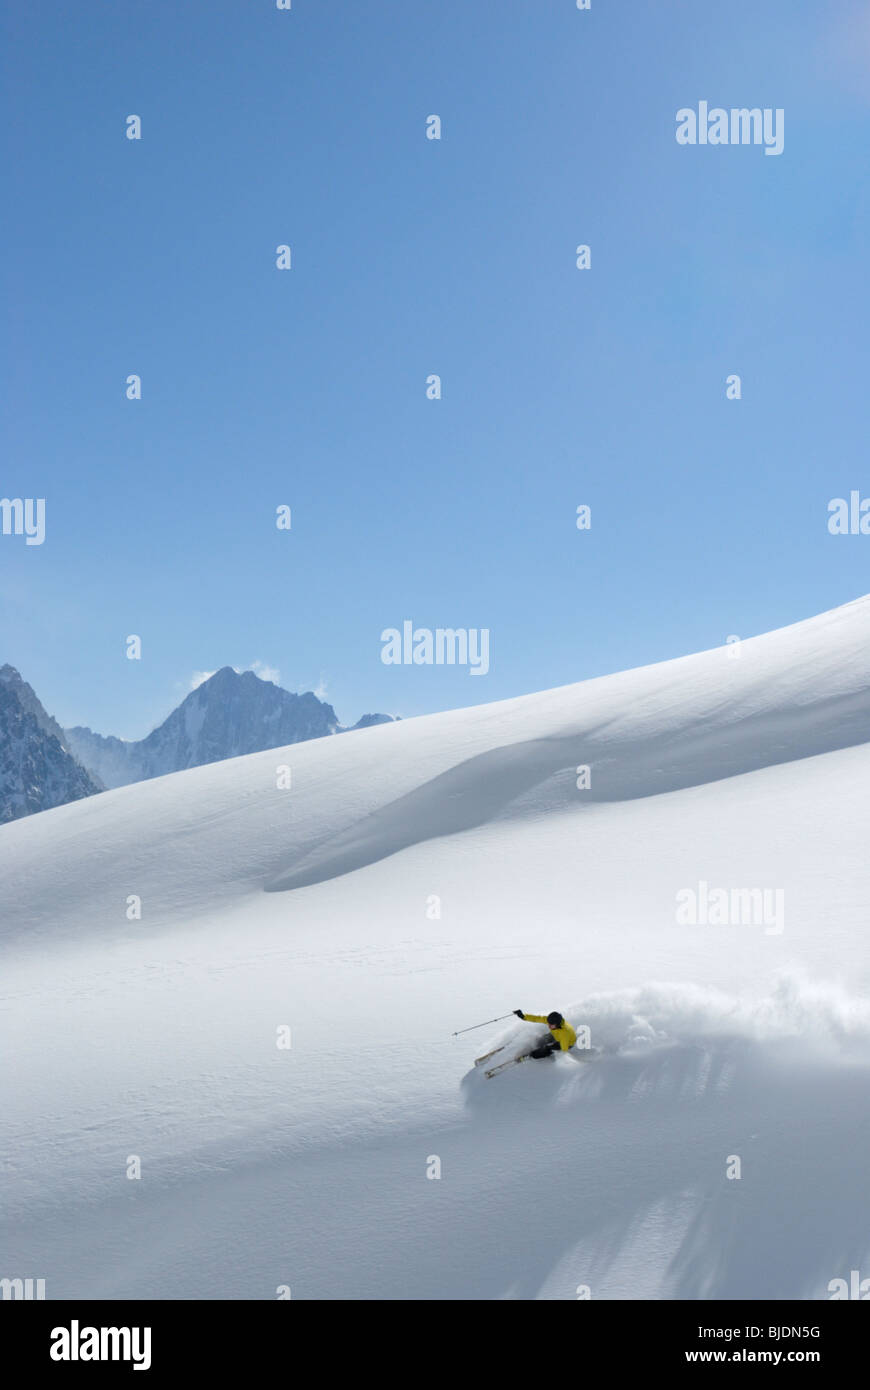 Le ski en neige poudreuse, Chamonix, France Banque D'Images